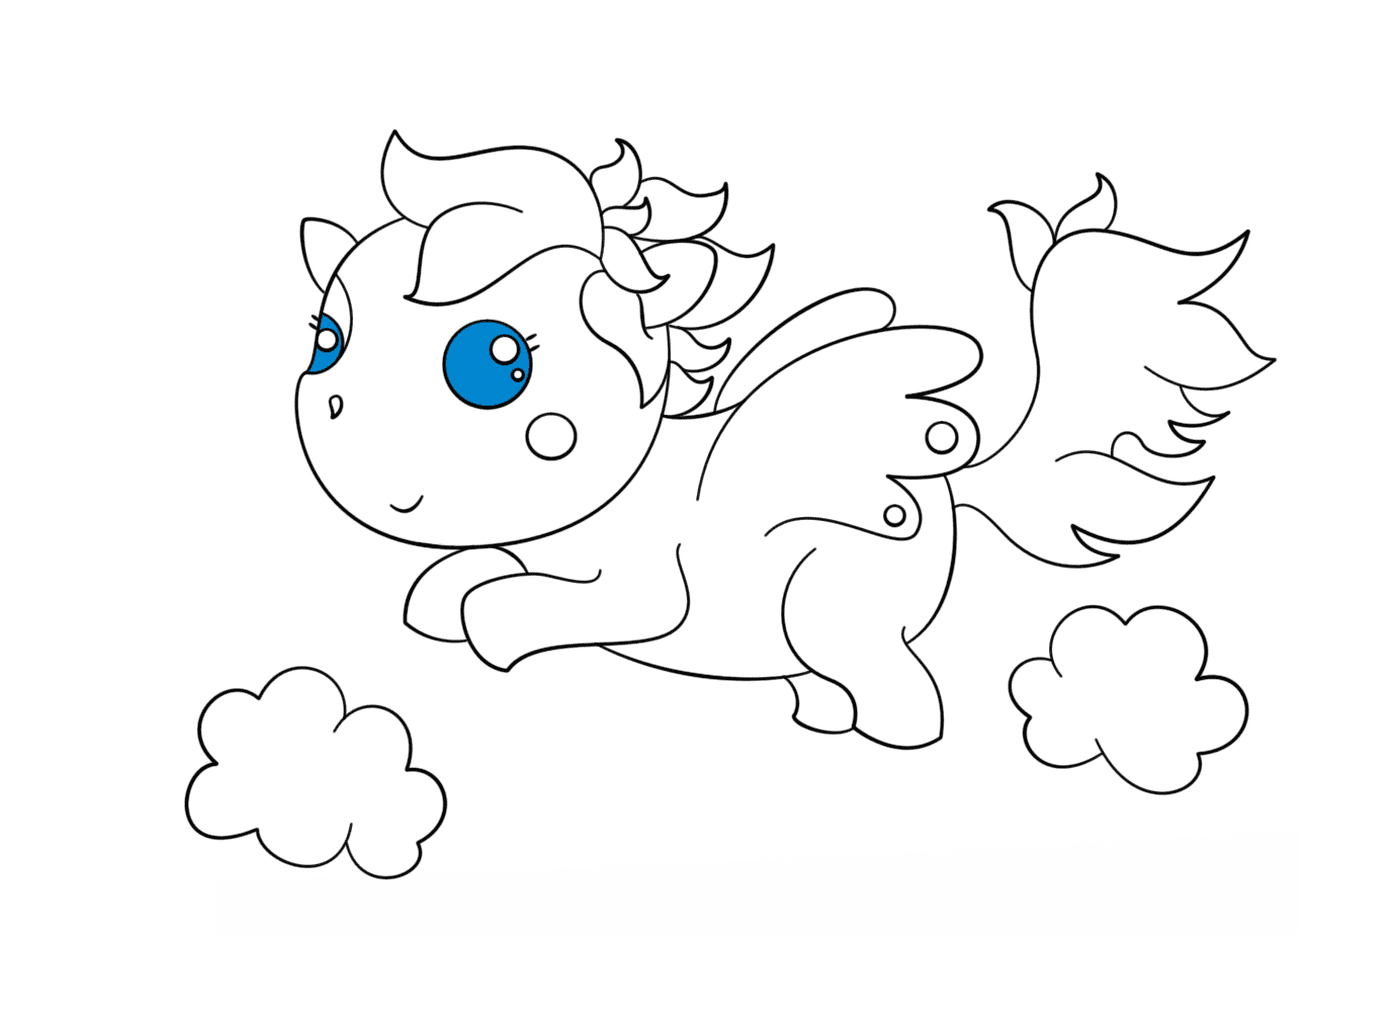  Pegasus chibi bonito 